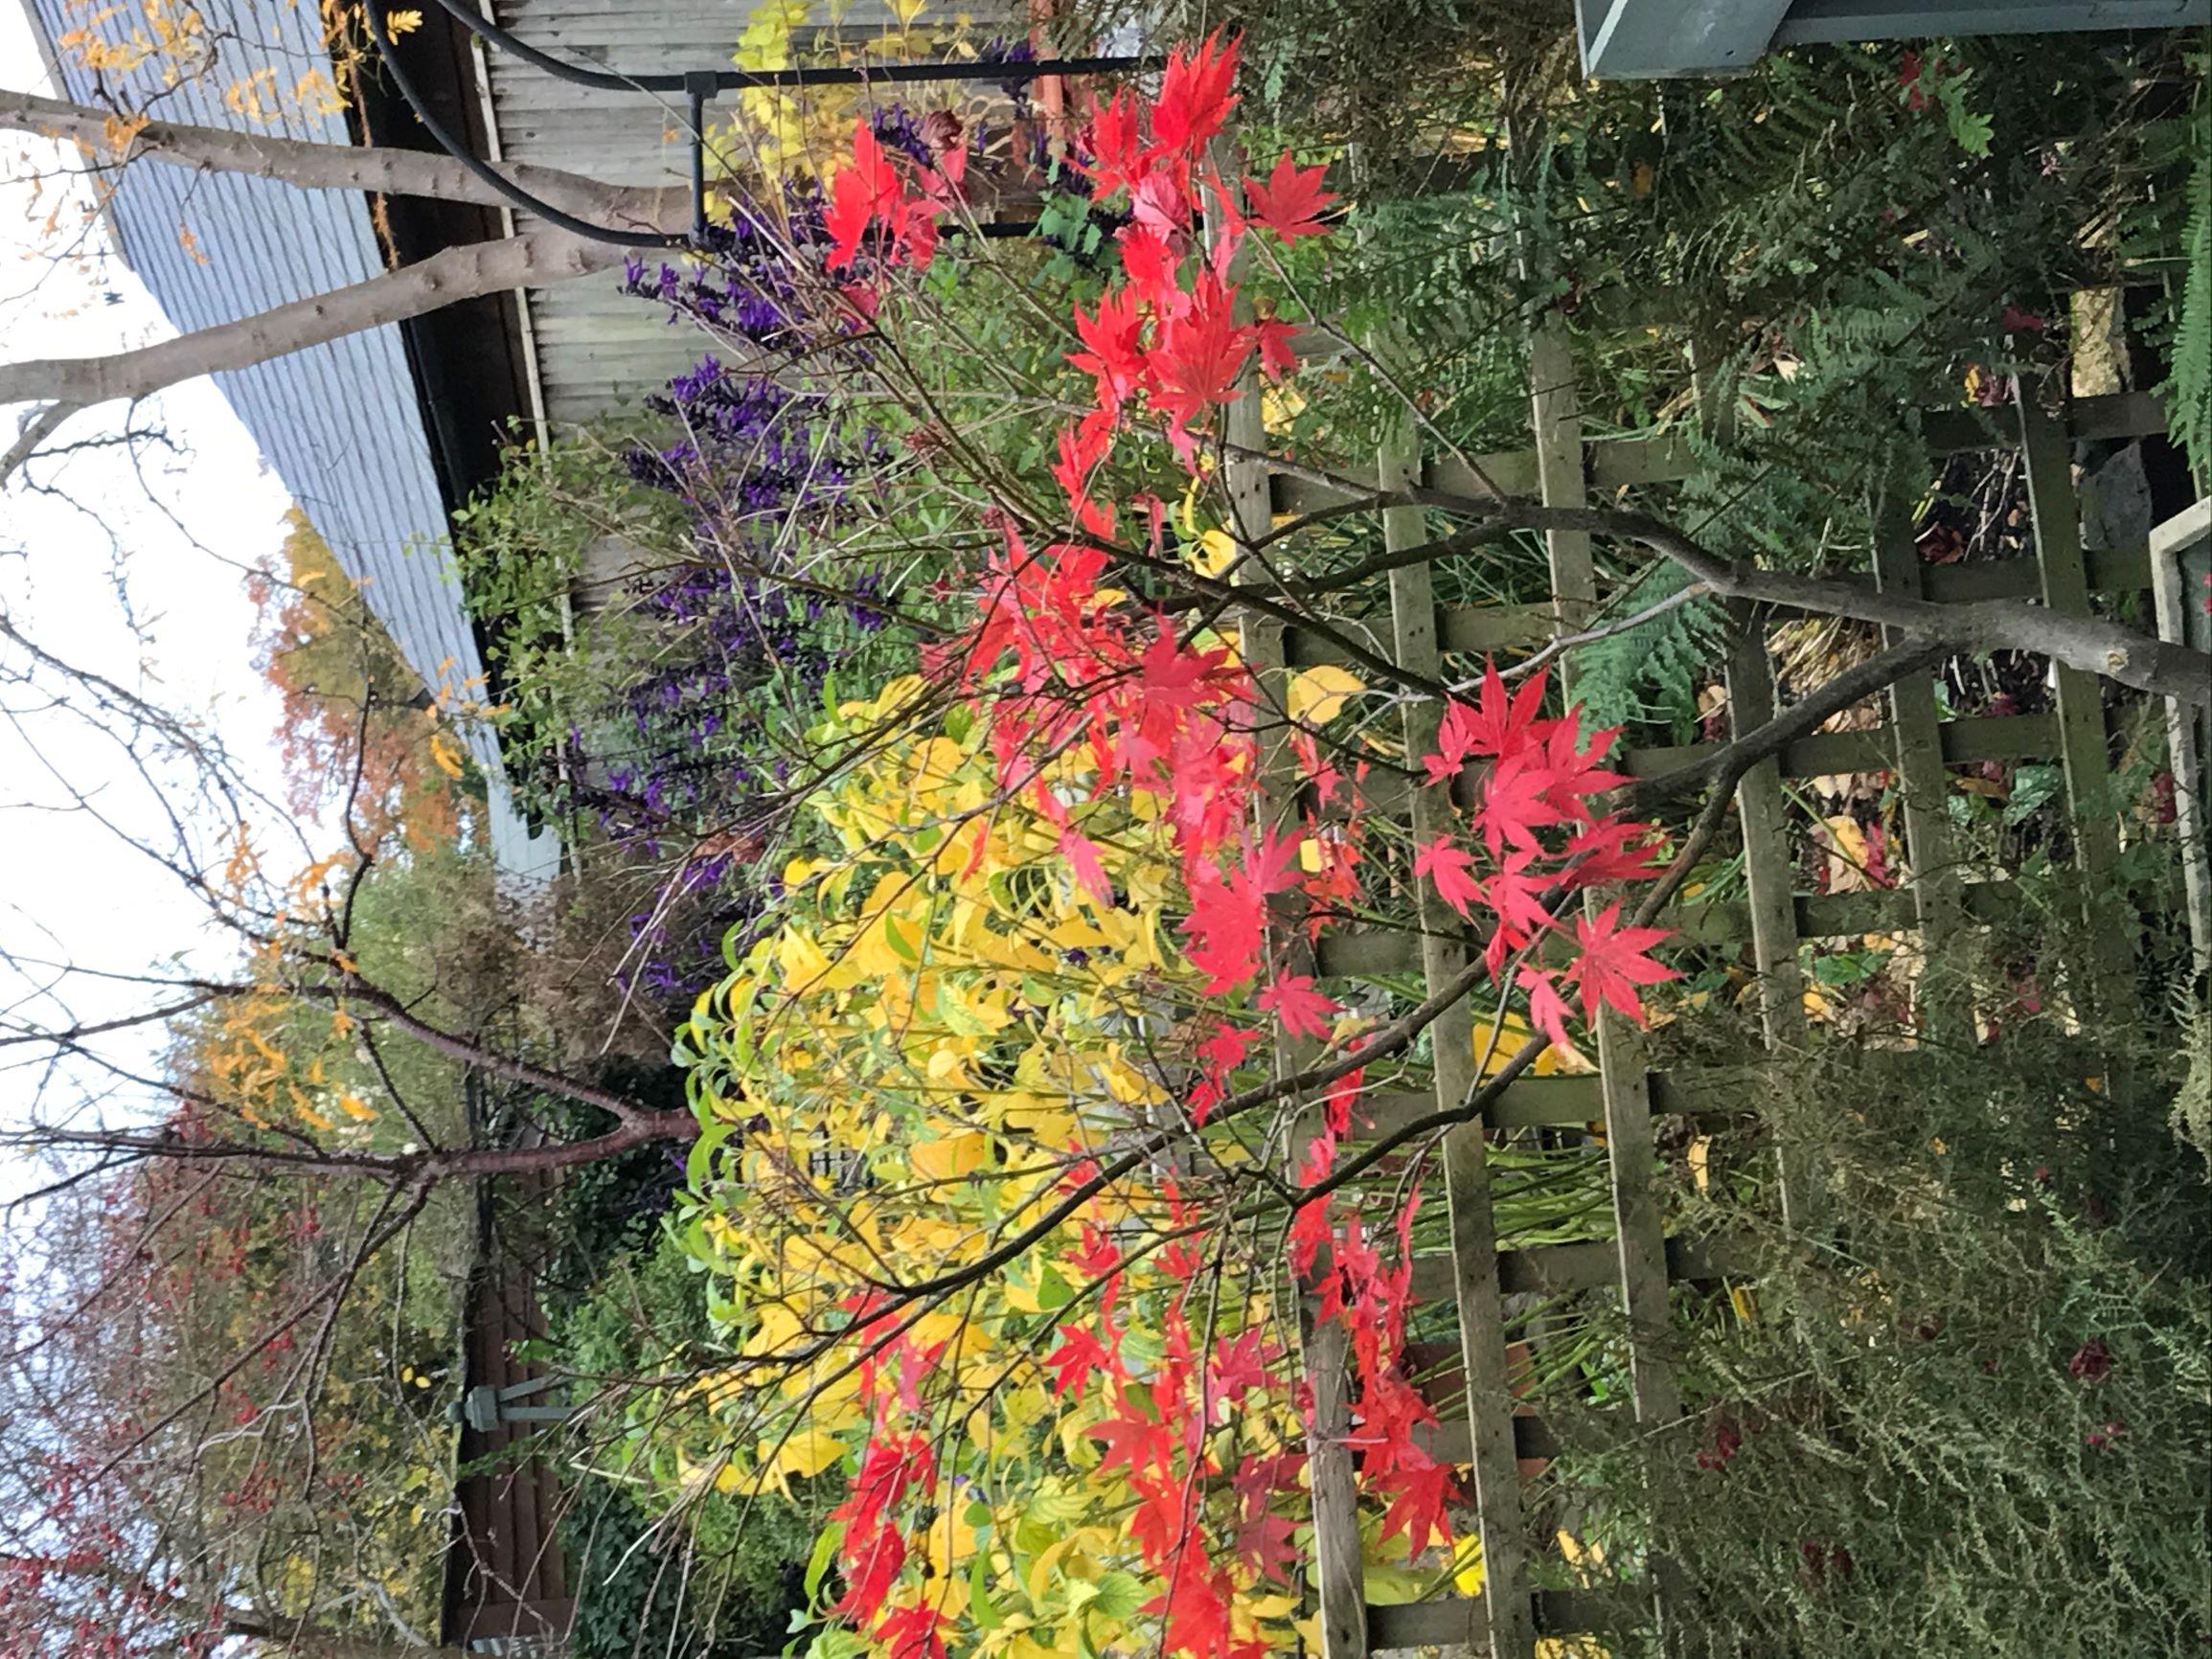 Autumn colours in Sheelagh's garden